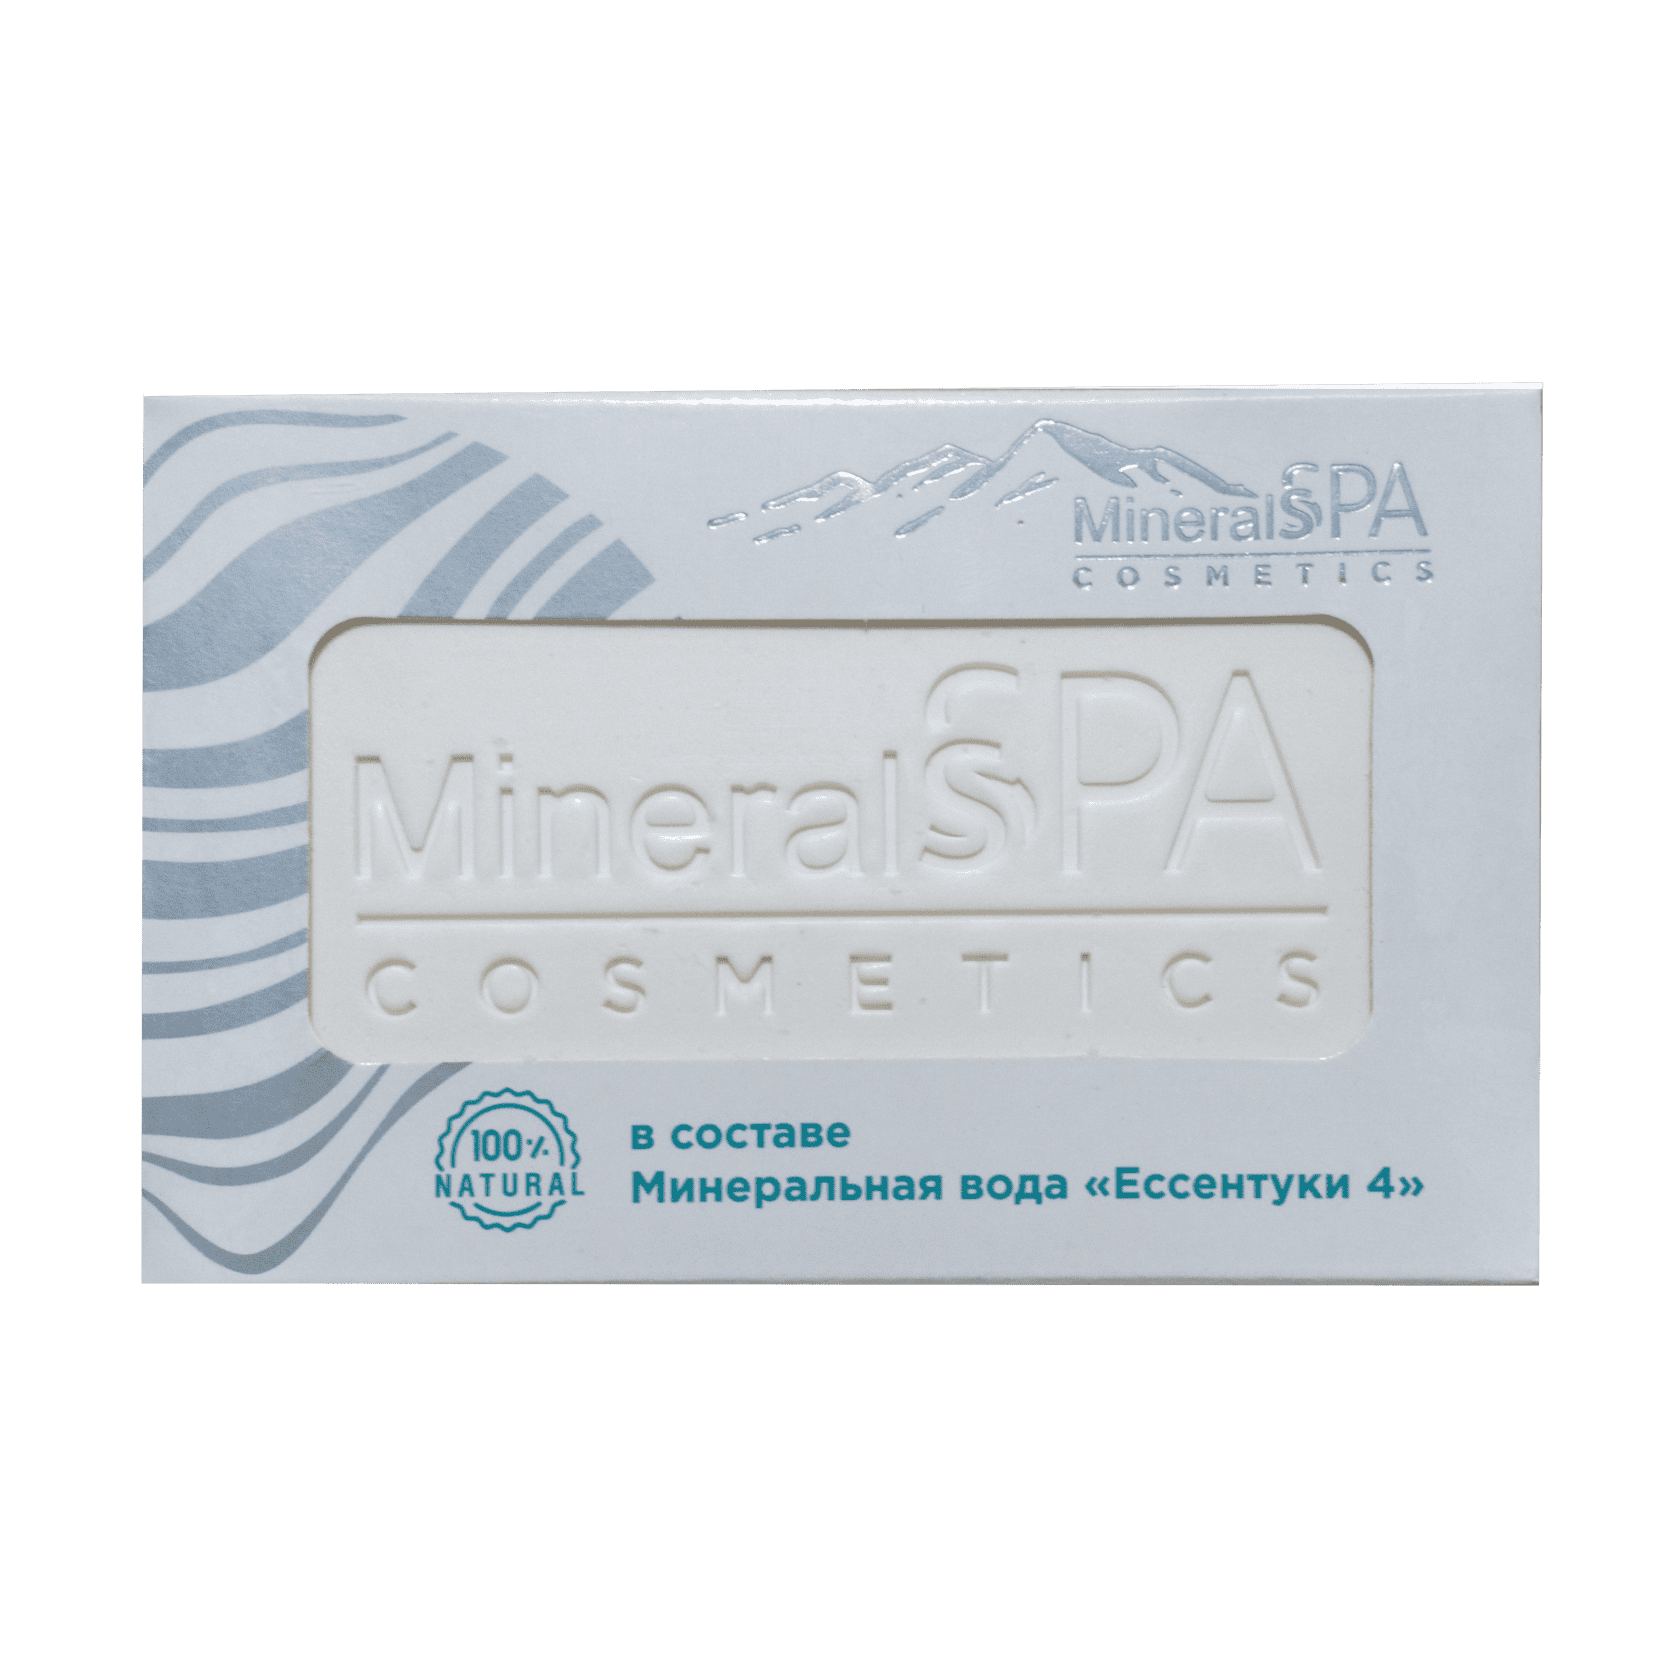 Мыло «MineralSPA cosmetics» на основе минеральной воды Ессентуки №4